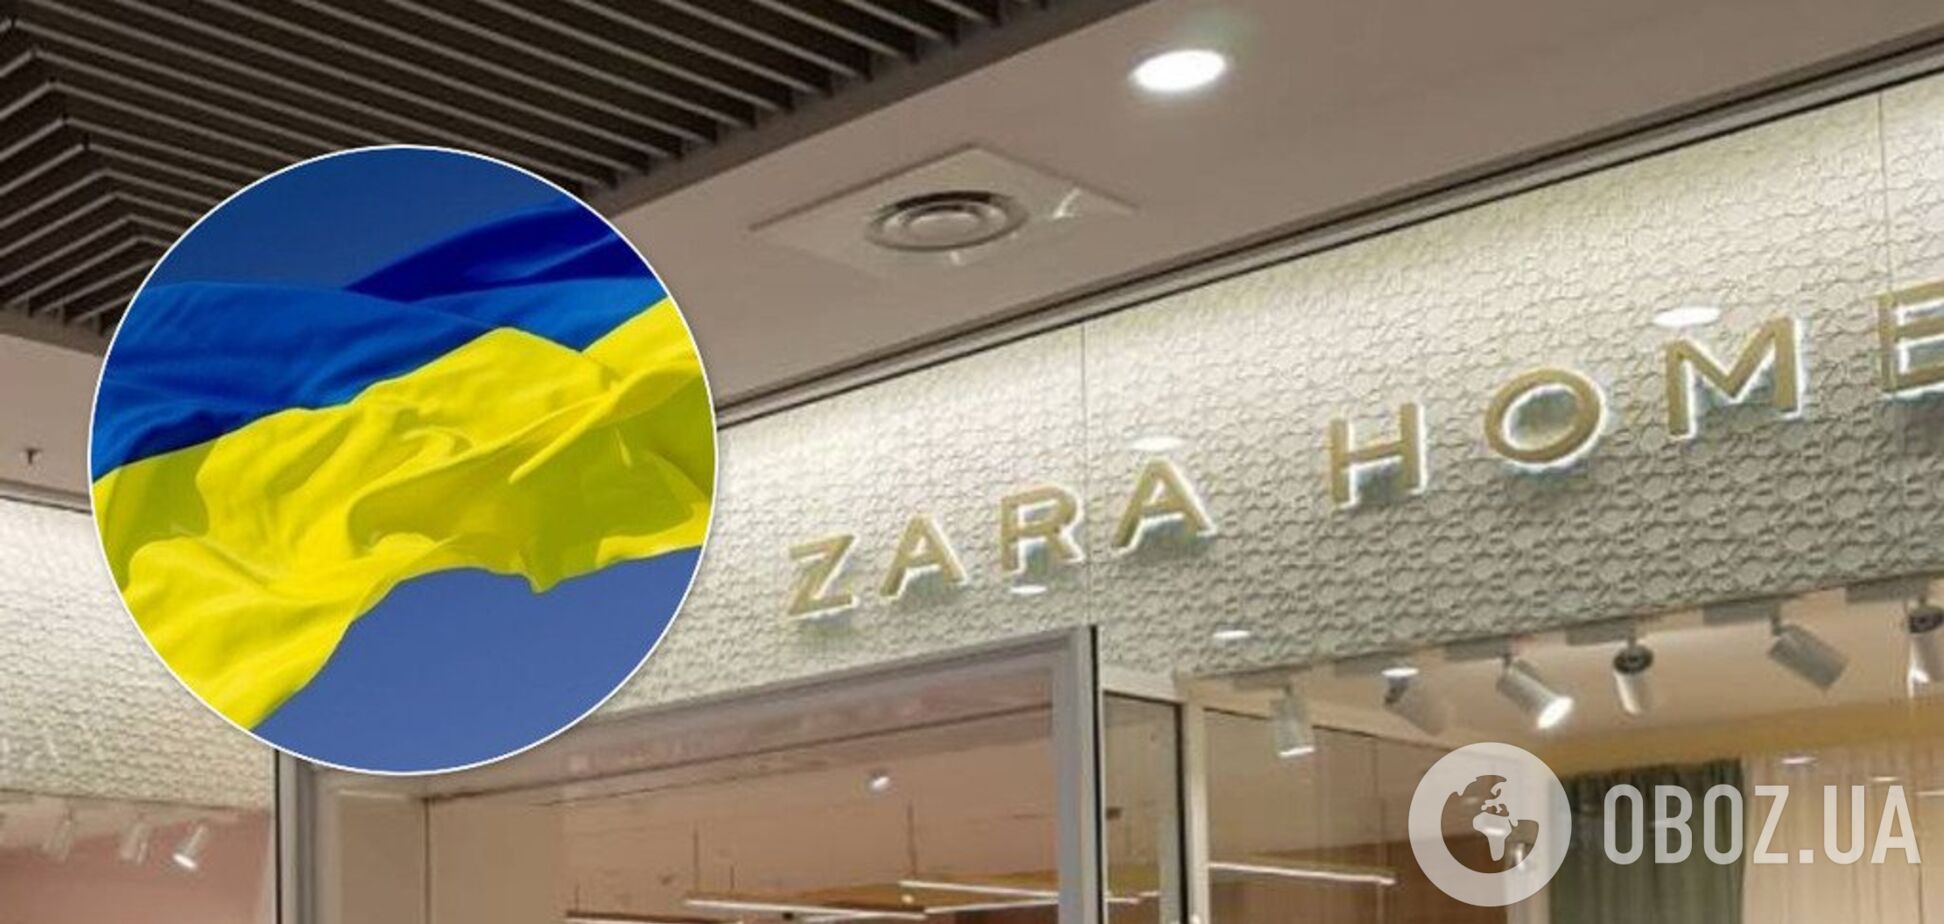 'Только на русском!' Zara угодила в скандал из-за украинского языка